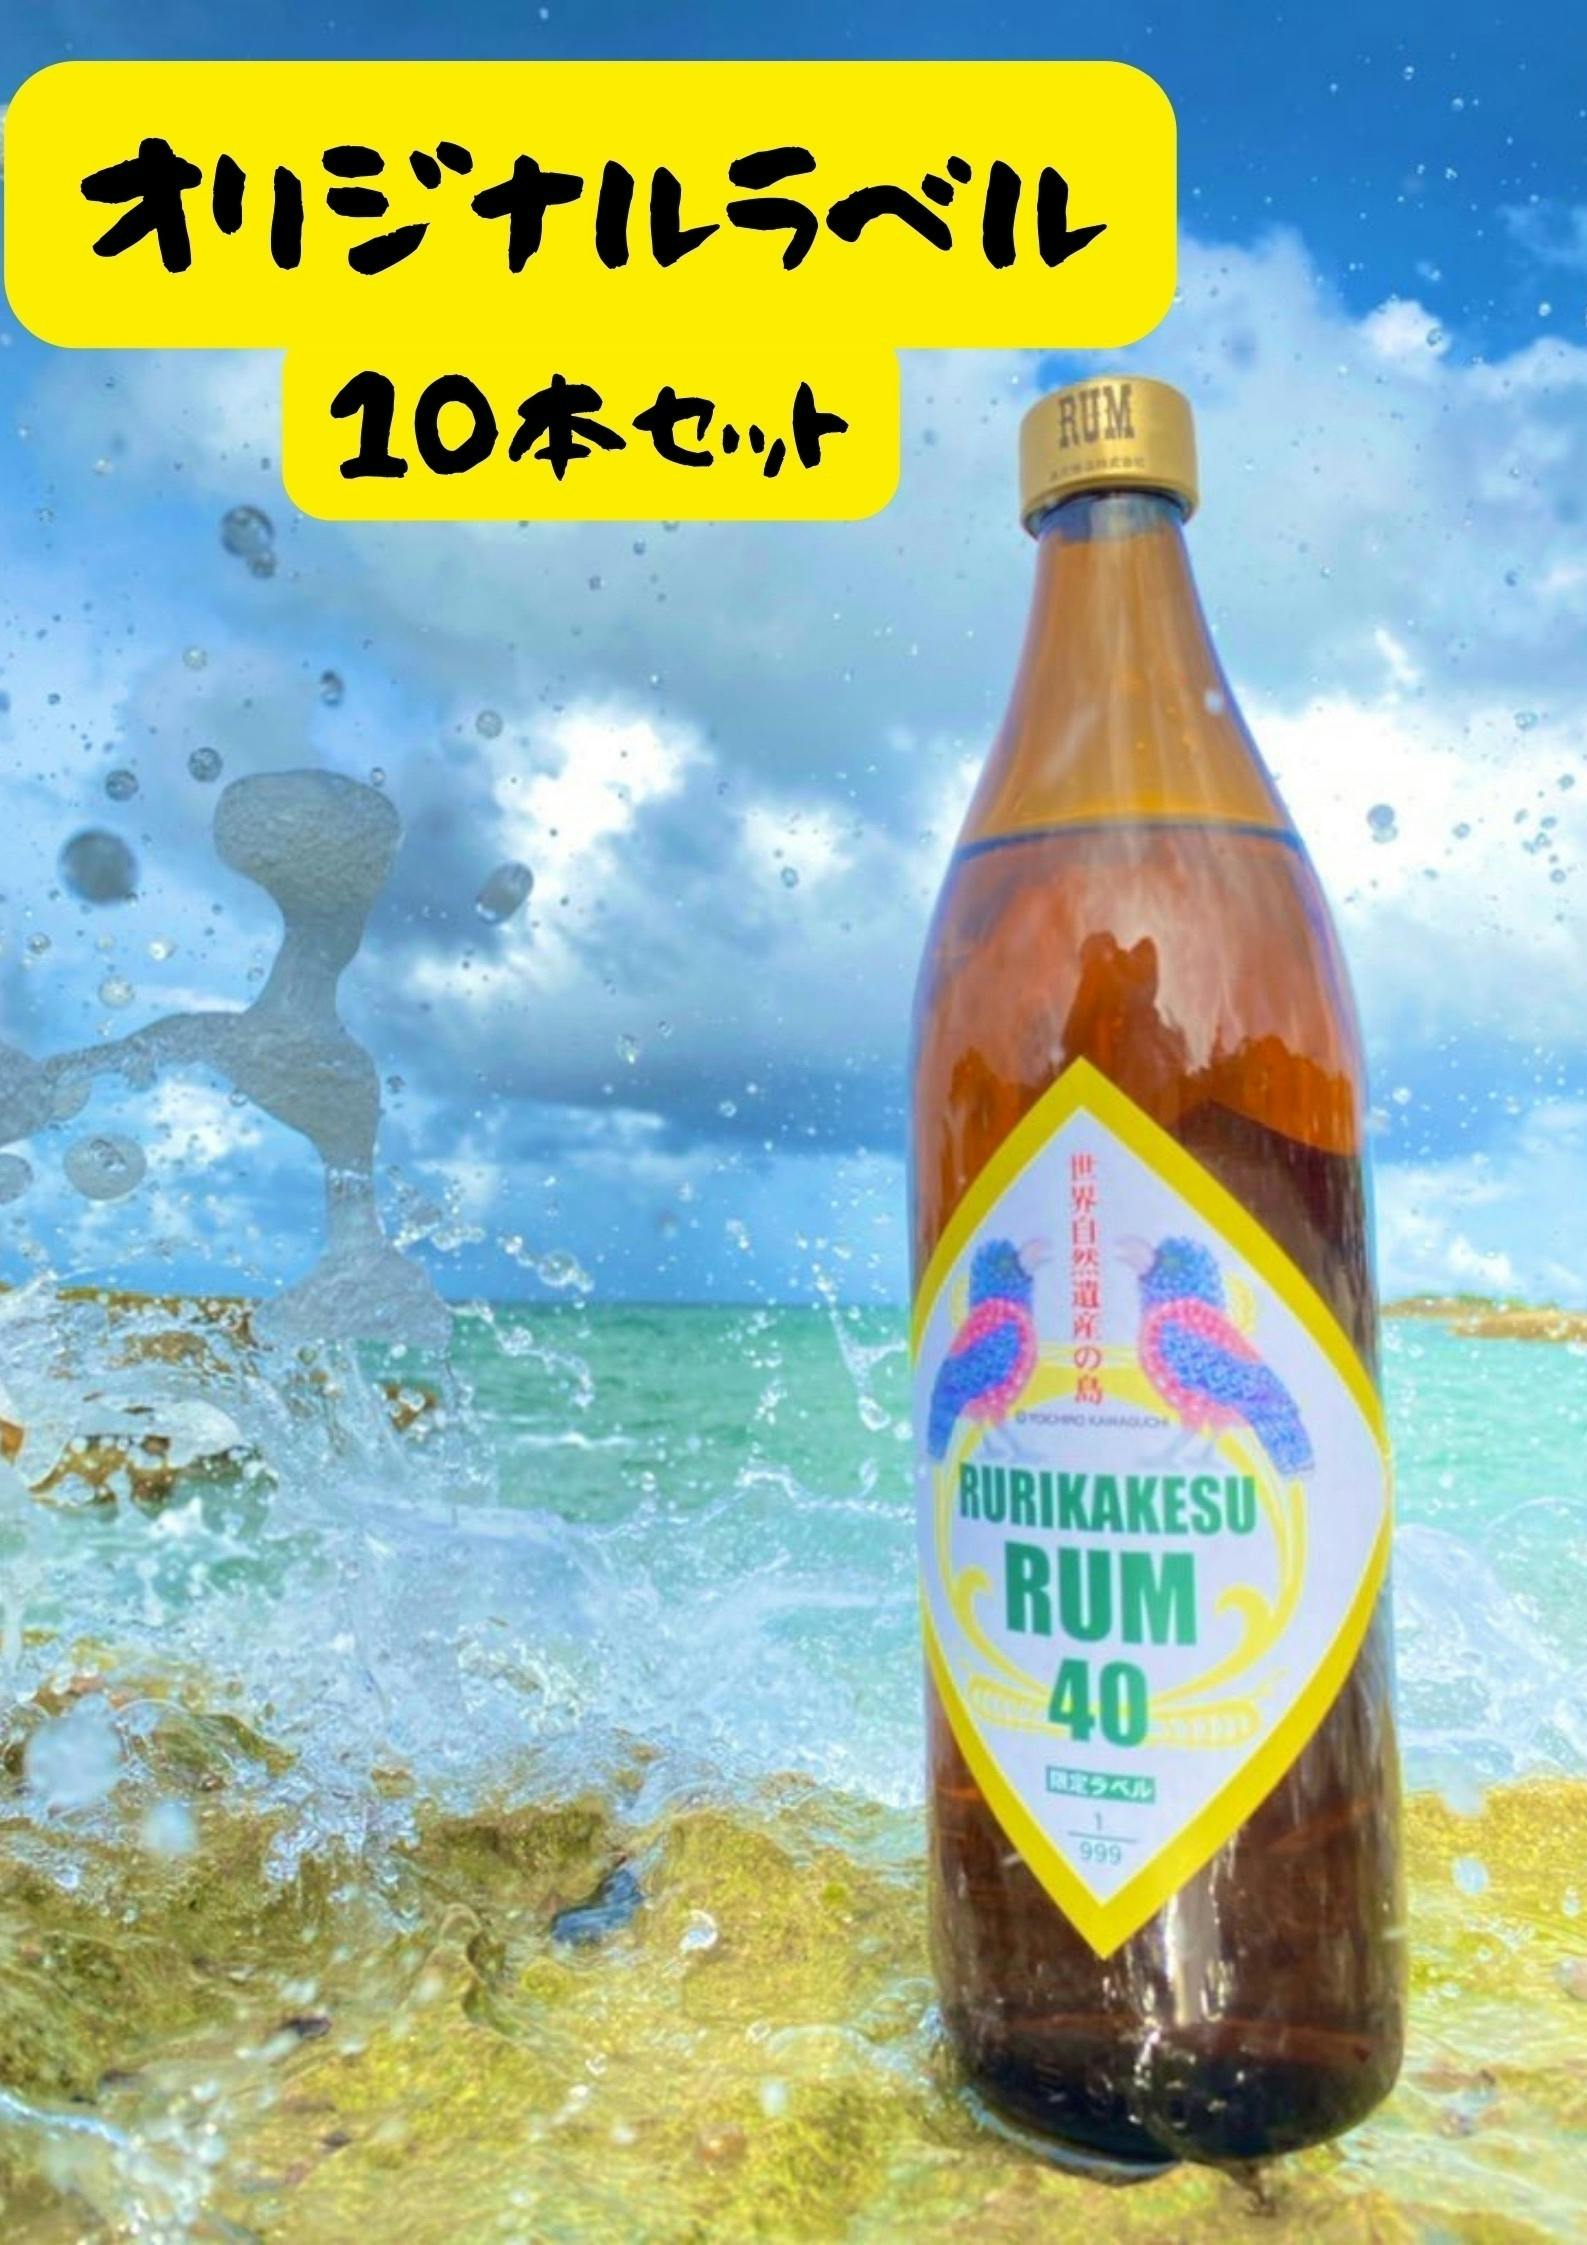 日本初の国産ラム酒「ルリカケス」で古酒造り、奄美徳之島の発展に寄与したい！ CAMPFIRE (キャンプファイヤー)